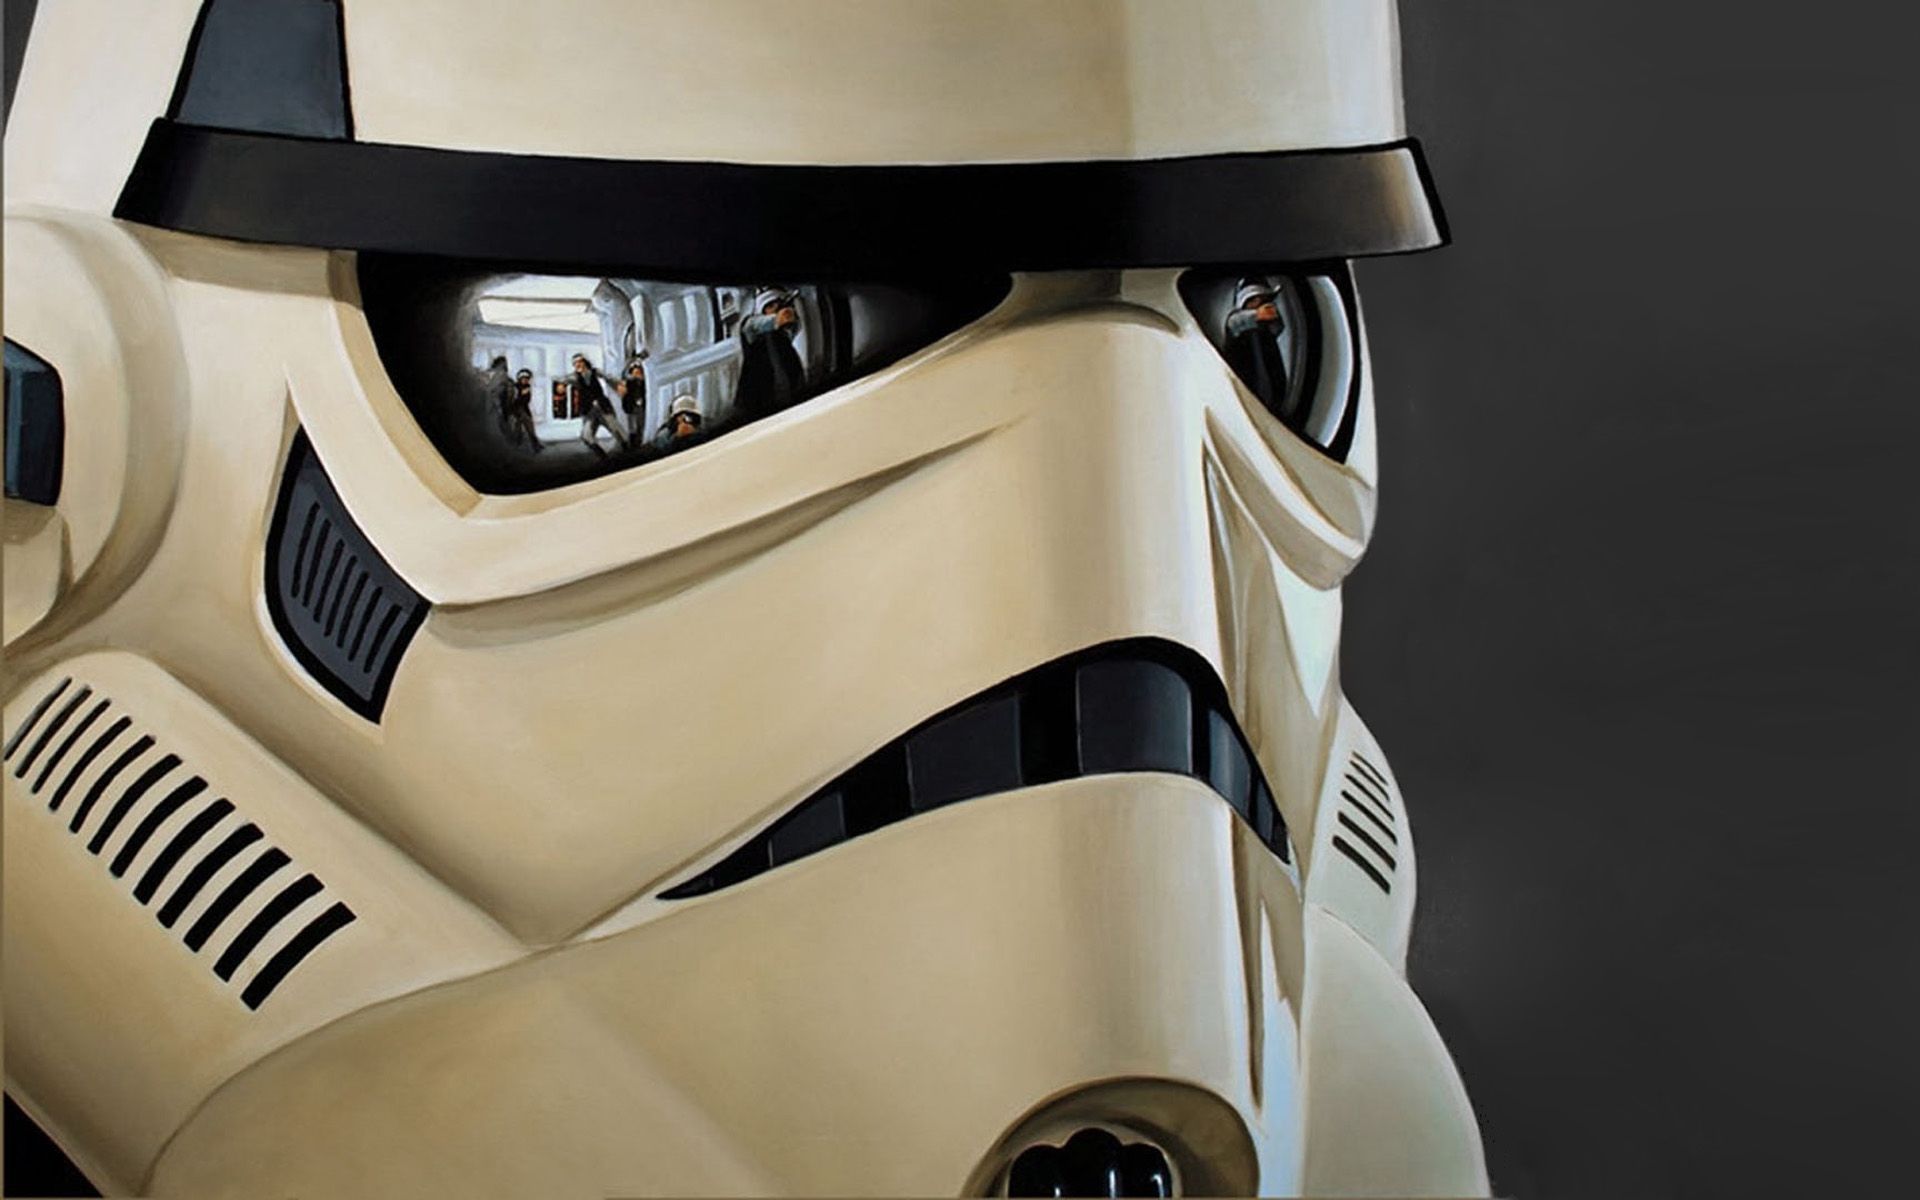 Star Wars Stormtrooper Helmet wallpaper. Star Wars Stormtrooper Helmet